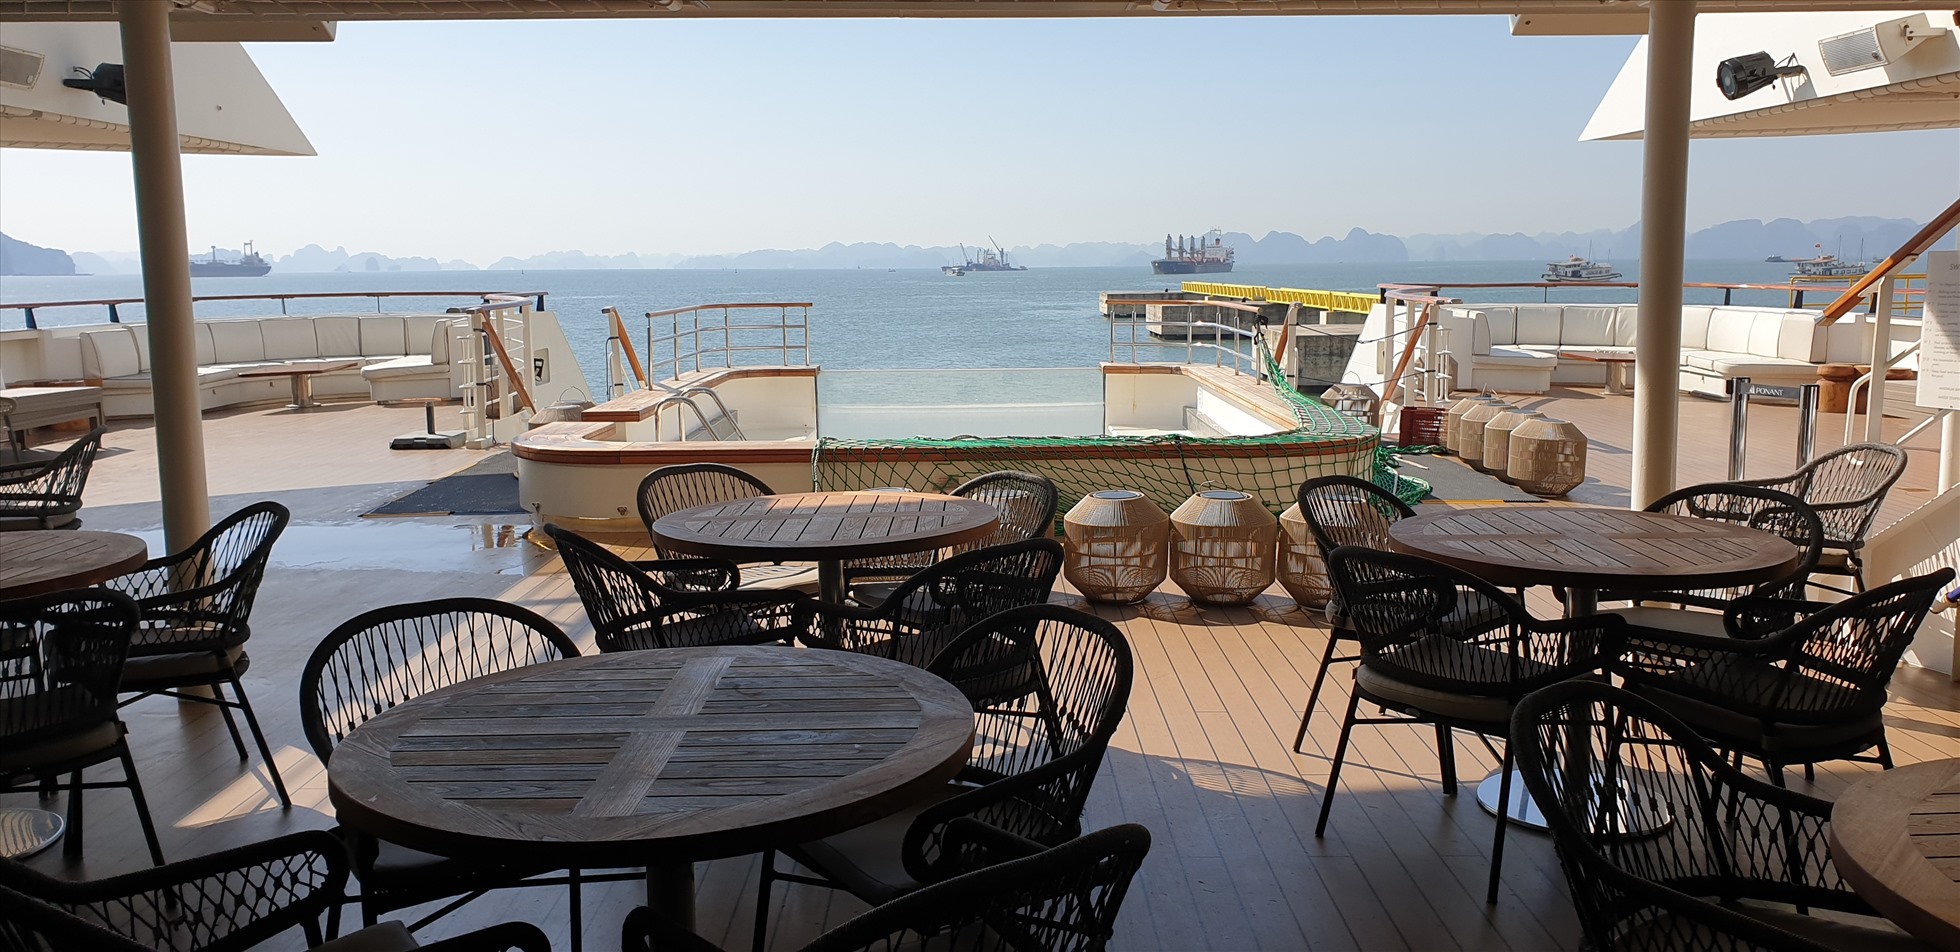 Nơi thư giãn, nhâm nhi cà phê của du khách. Phía trước là một bể bơi hoạt động 24/24. Ảnh: Nguyễn Hùng